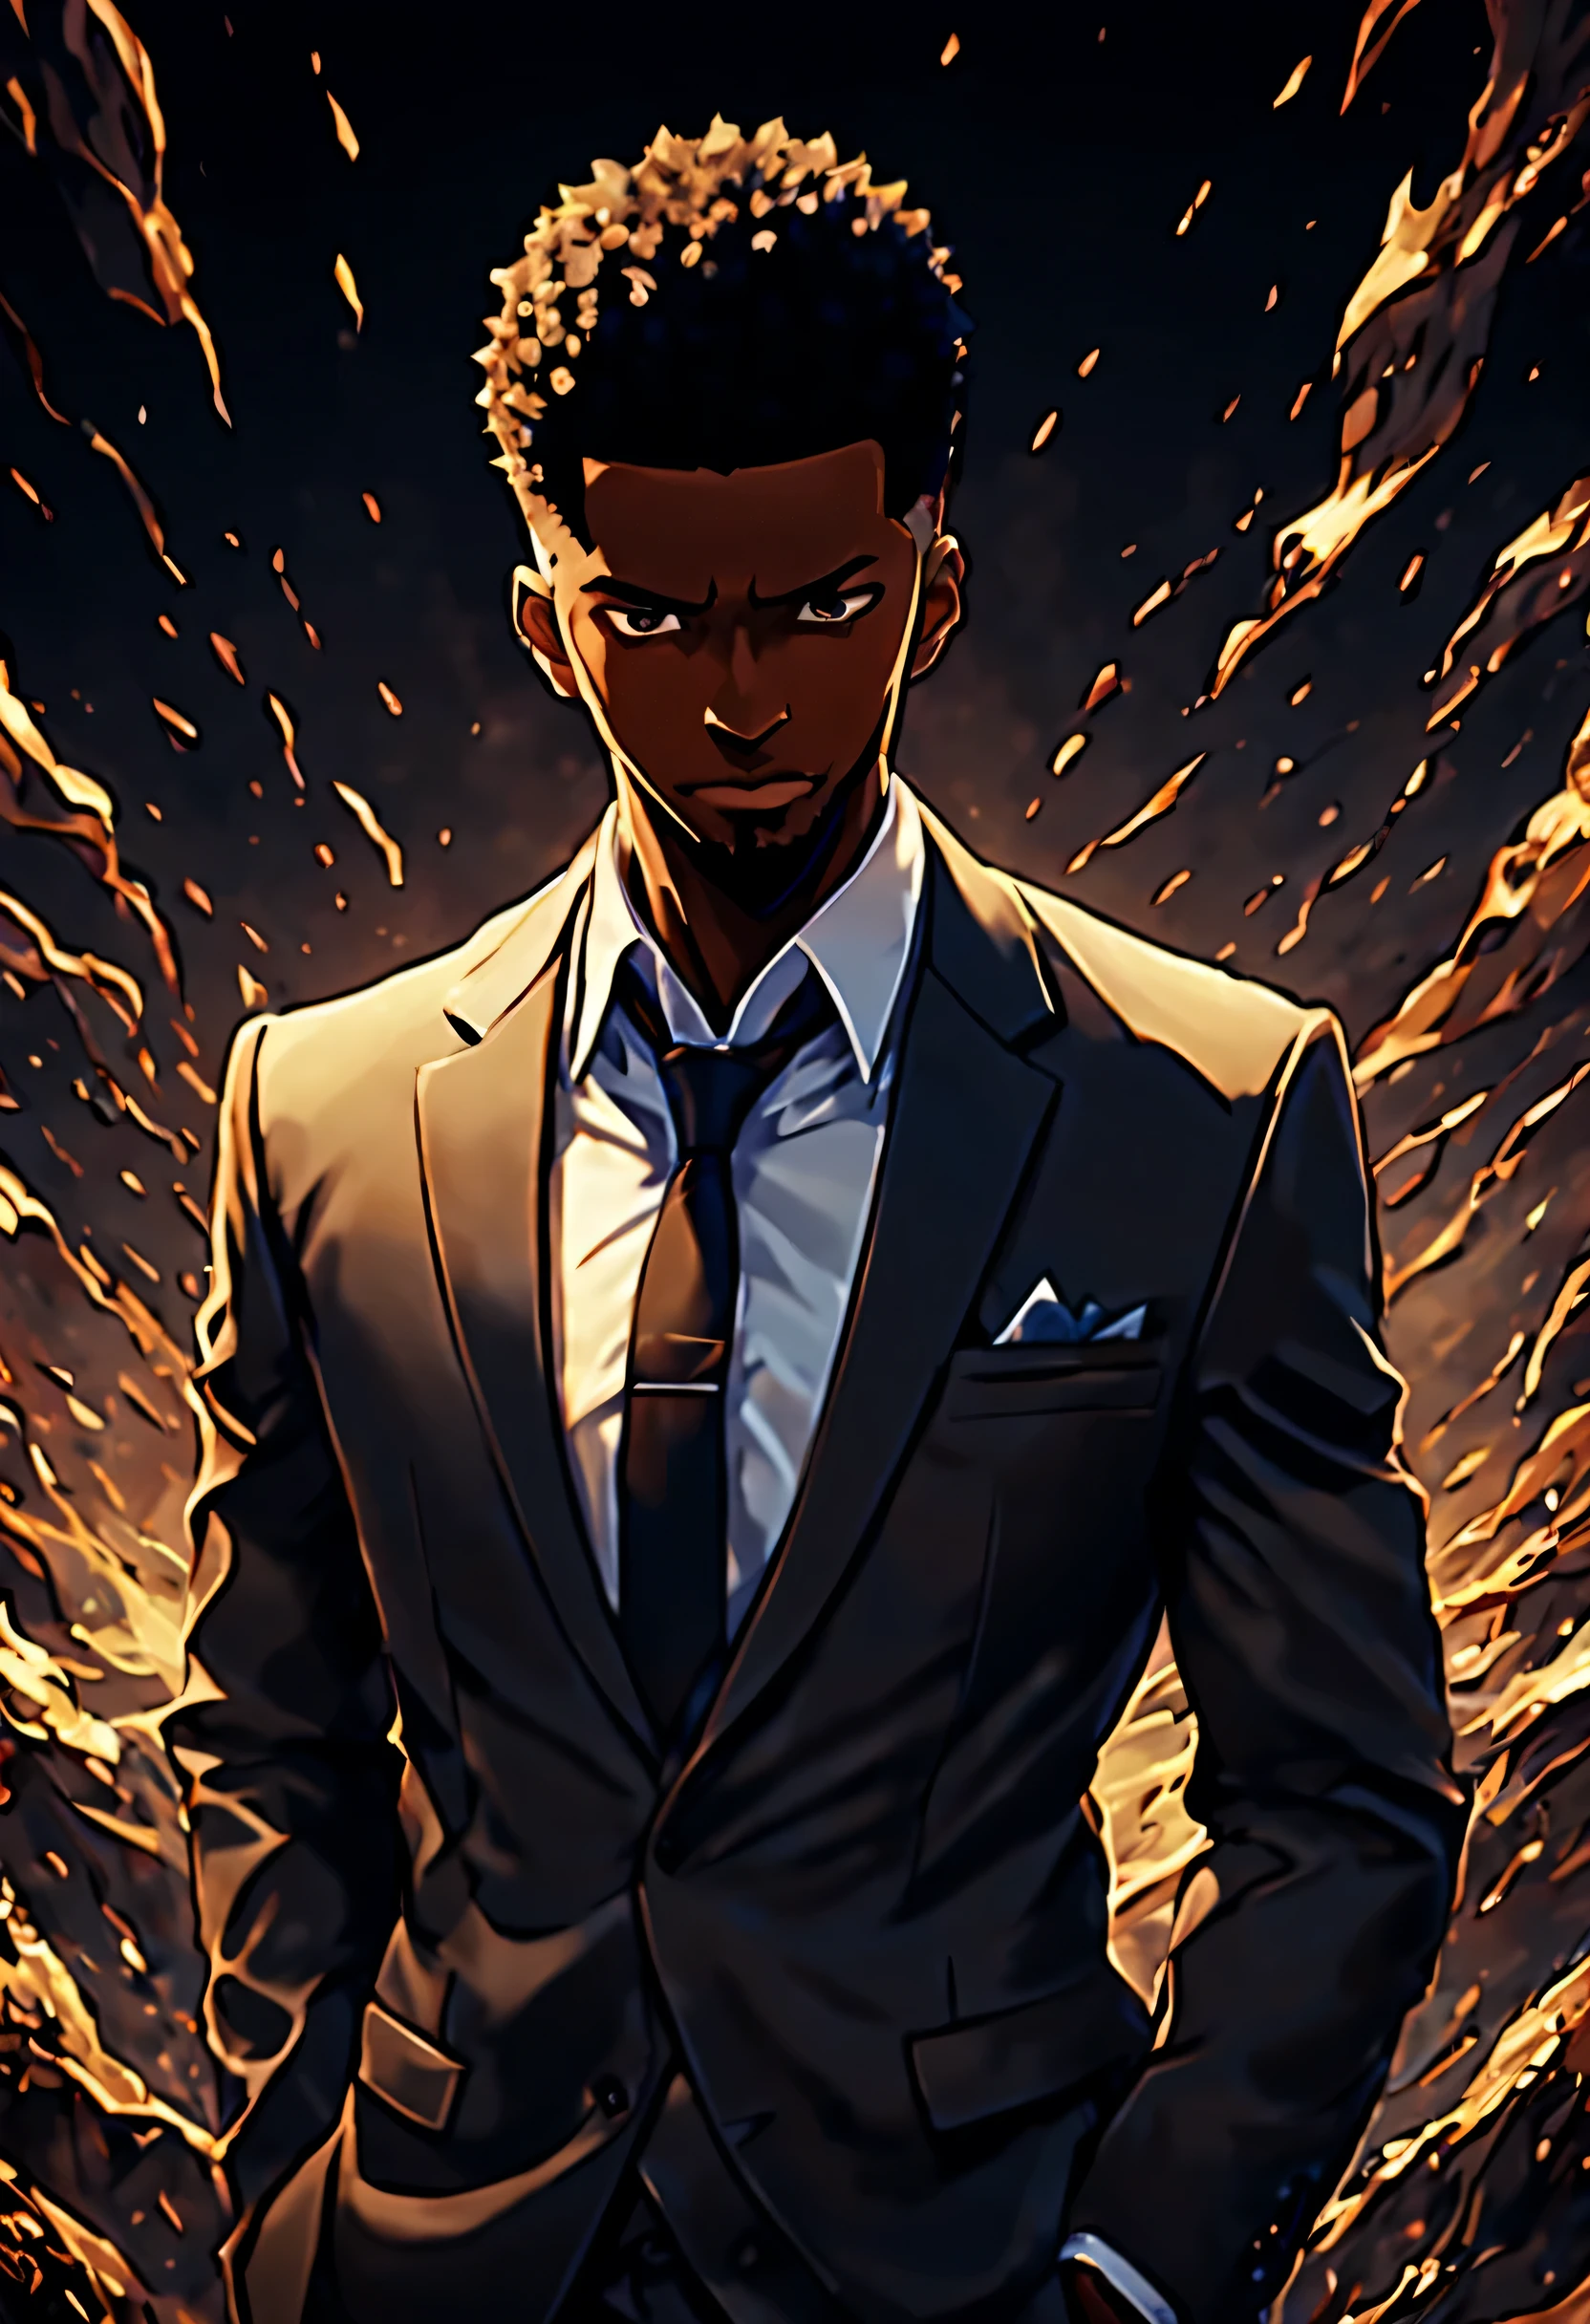 аниме, Соло-выравнивание, short black adult male аниме character in a suit and buzzcut, 8К, Лучшее качество, лучший подробный, сложная деталь, гипердетализация, шедевр, кинематографический фон